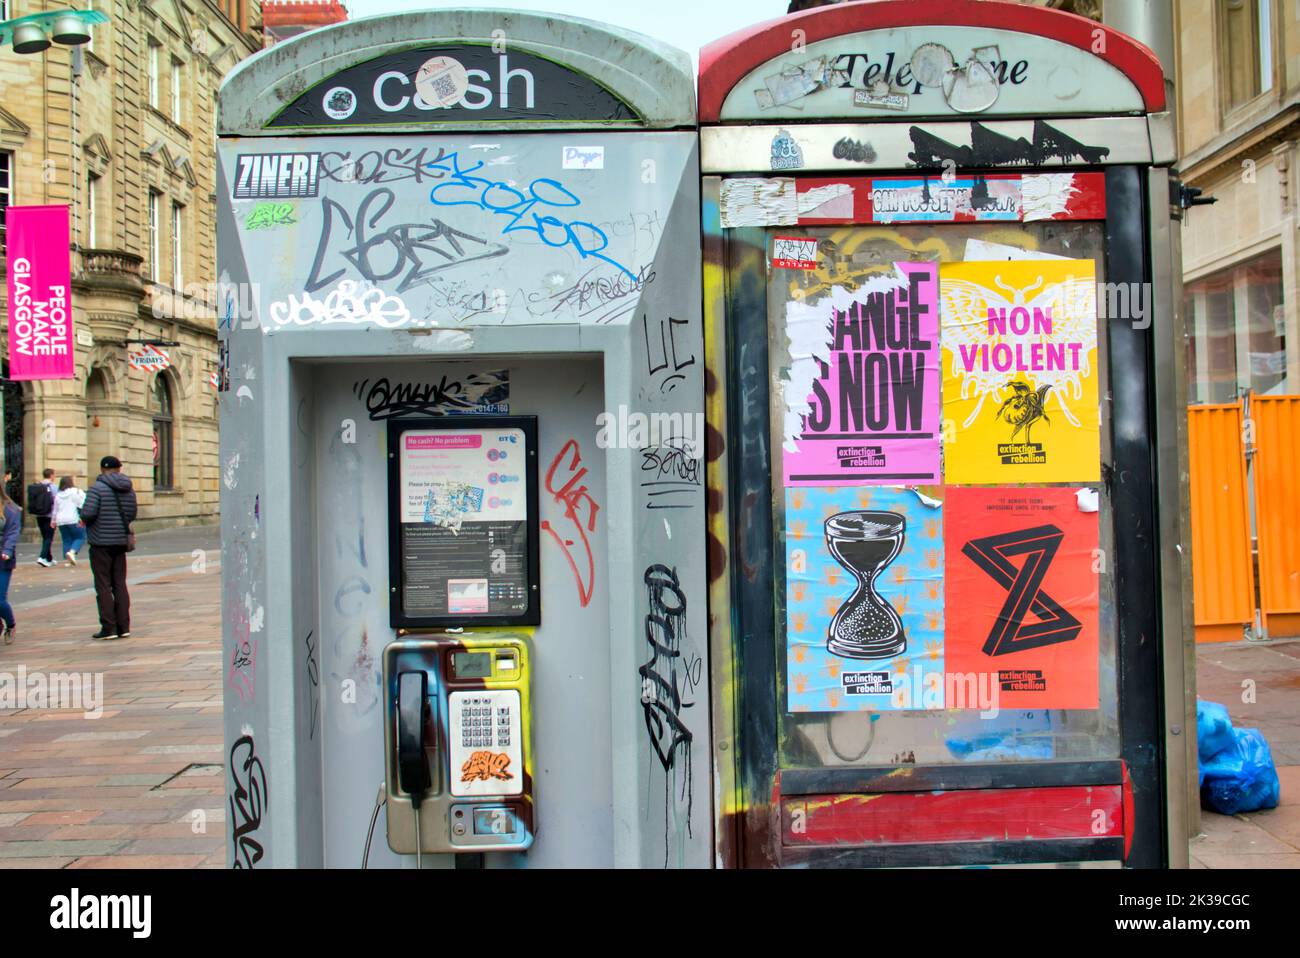 des boîtes d'appel sont parsemées d'affiches de graffiti et vandales. Buchanan Street The style Mile of Glasgow, Écosse, Royaume-Uni Banque D'Images